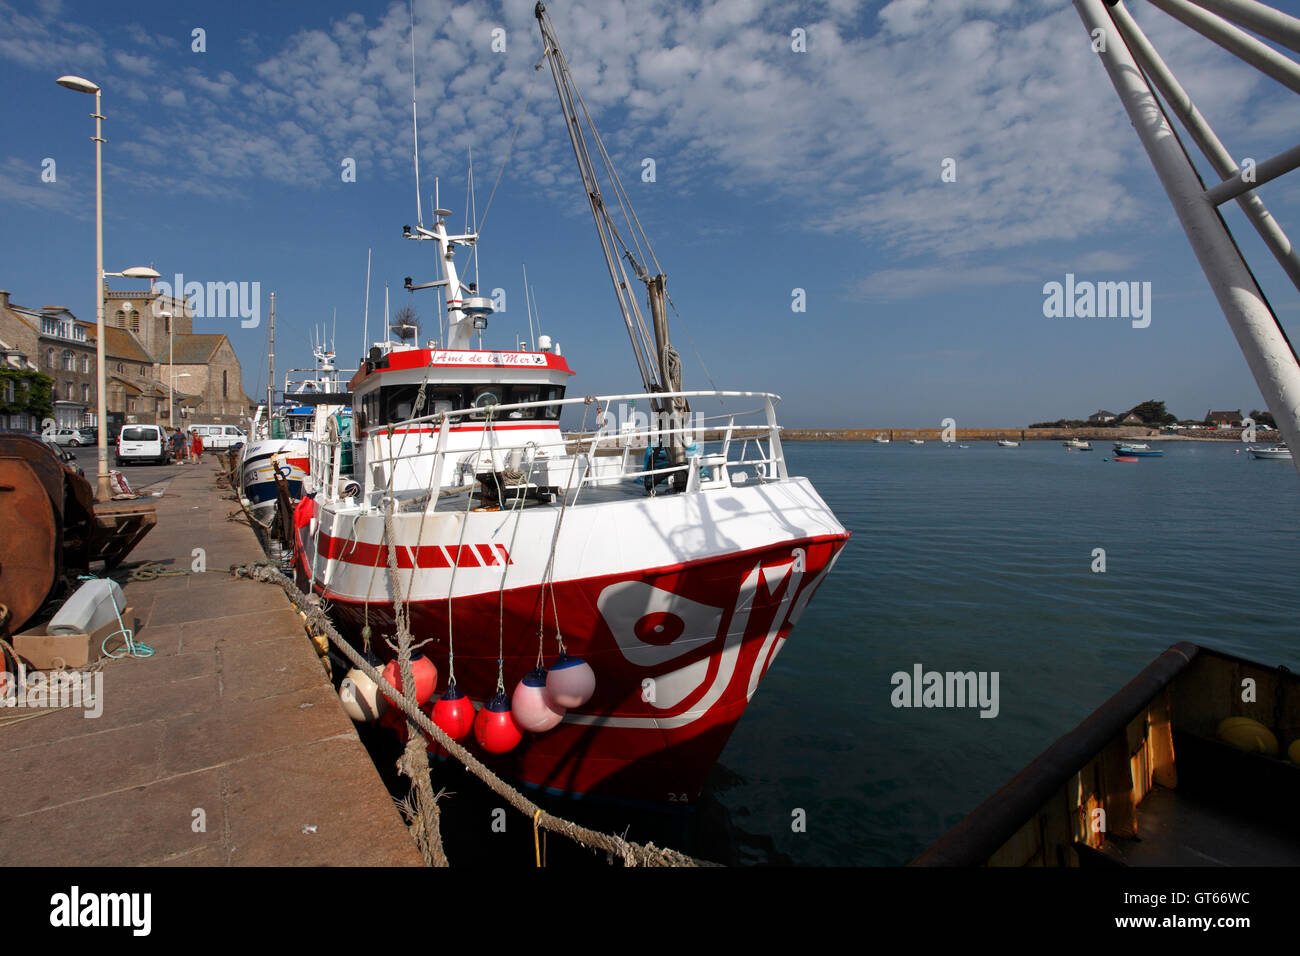 La flotte de pêche dans le port de Barfleur, Normandie, France. Banque D'Images